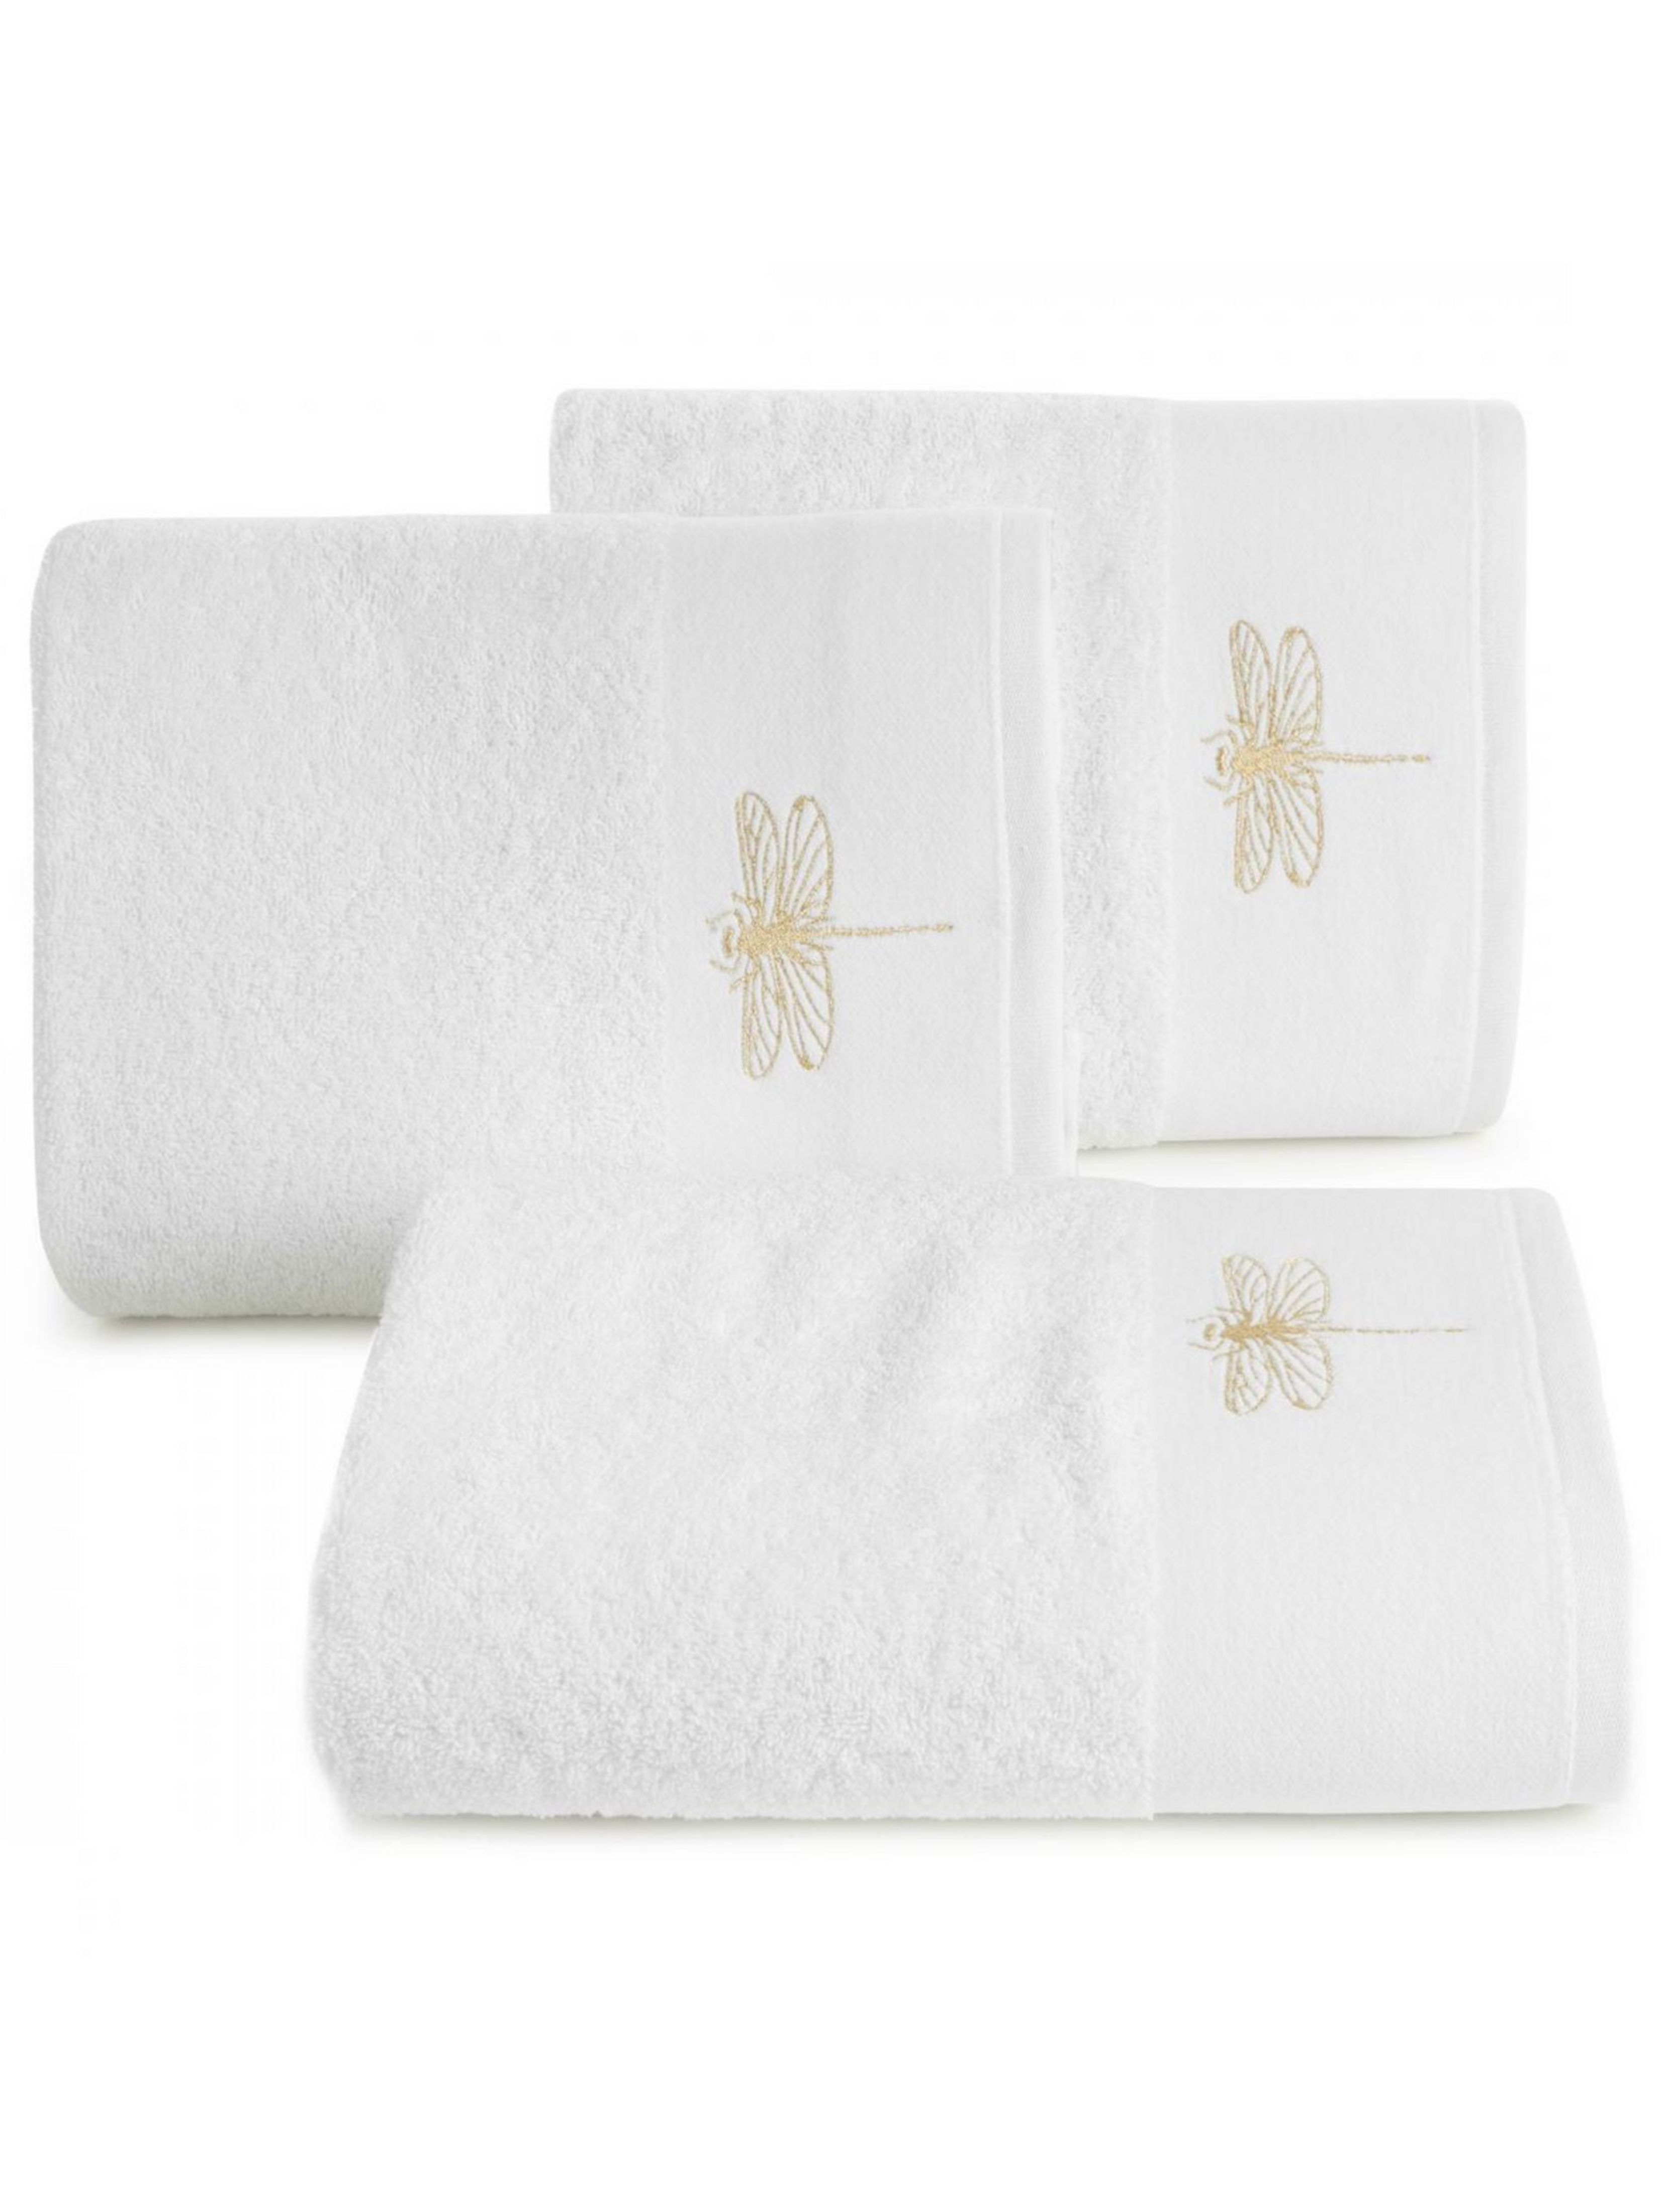 Biały ręcznik 50x90 cm z haftowaną ważką